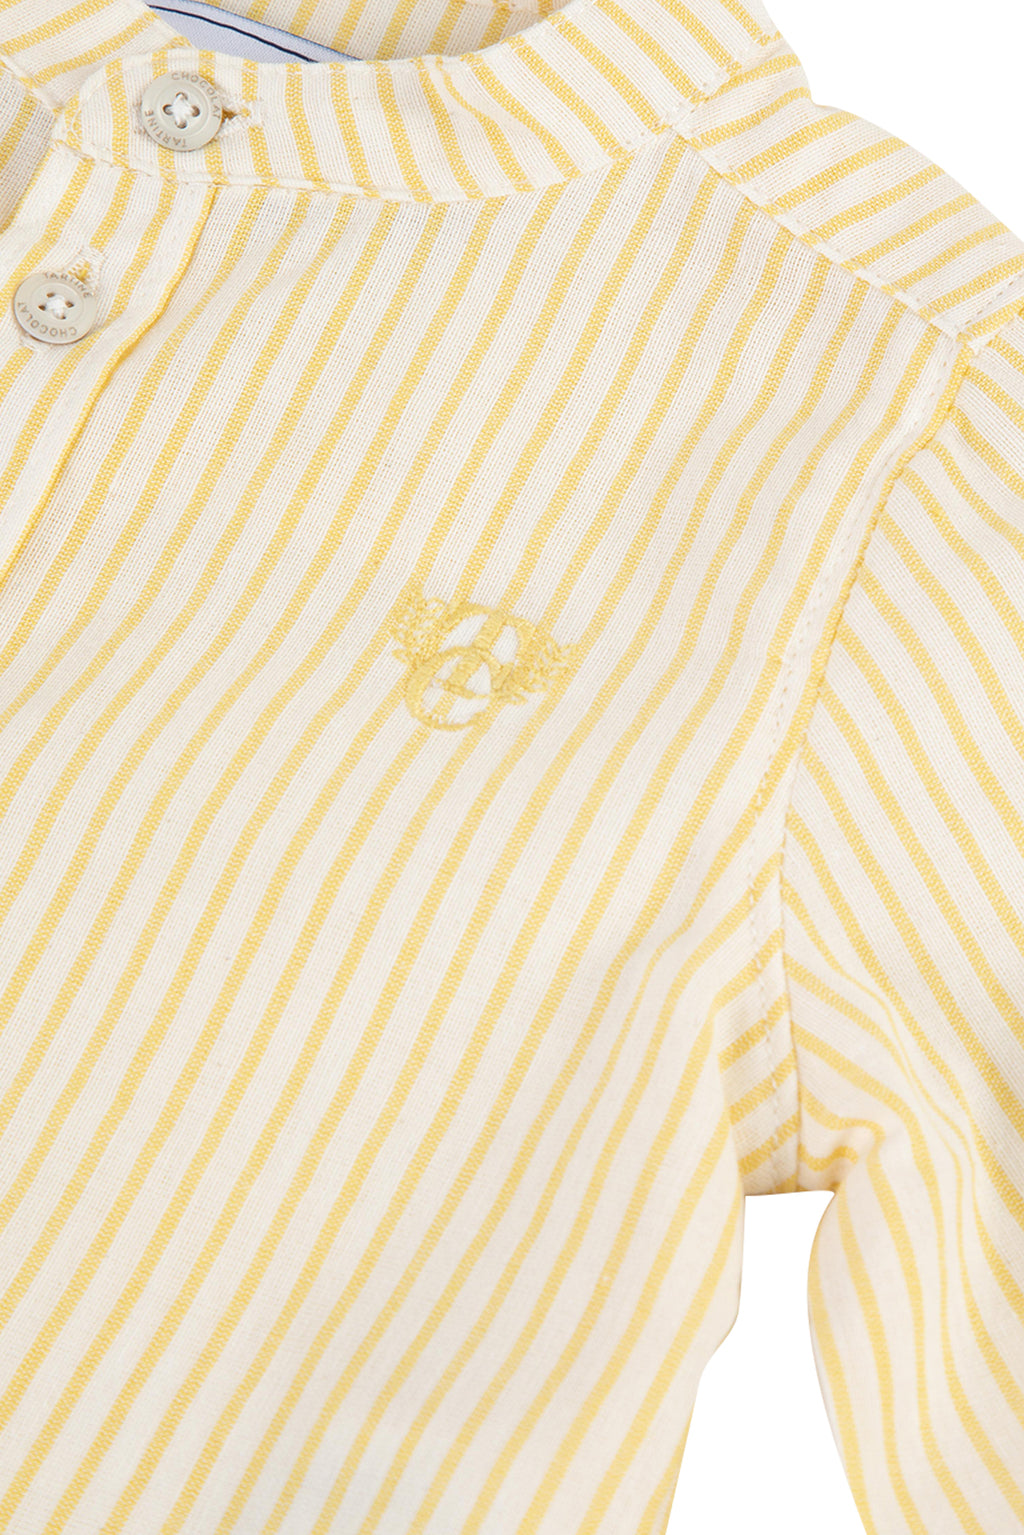 Shirt - Stripes Yellow pale